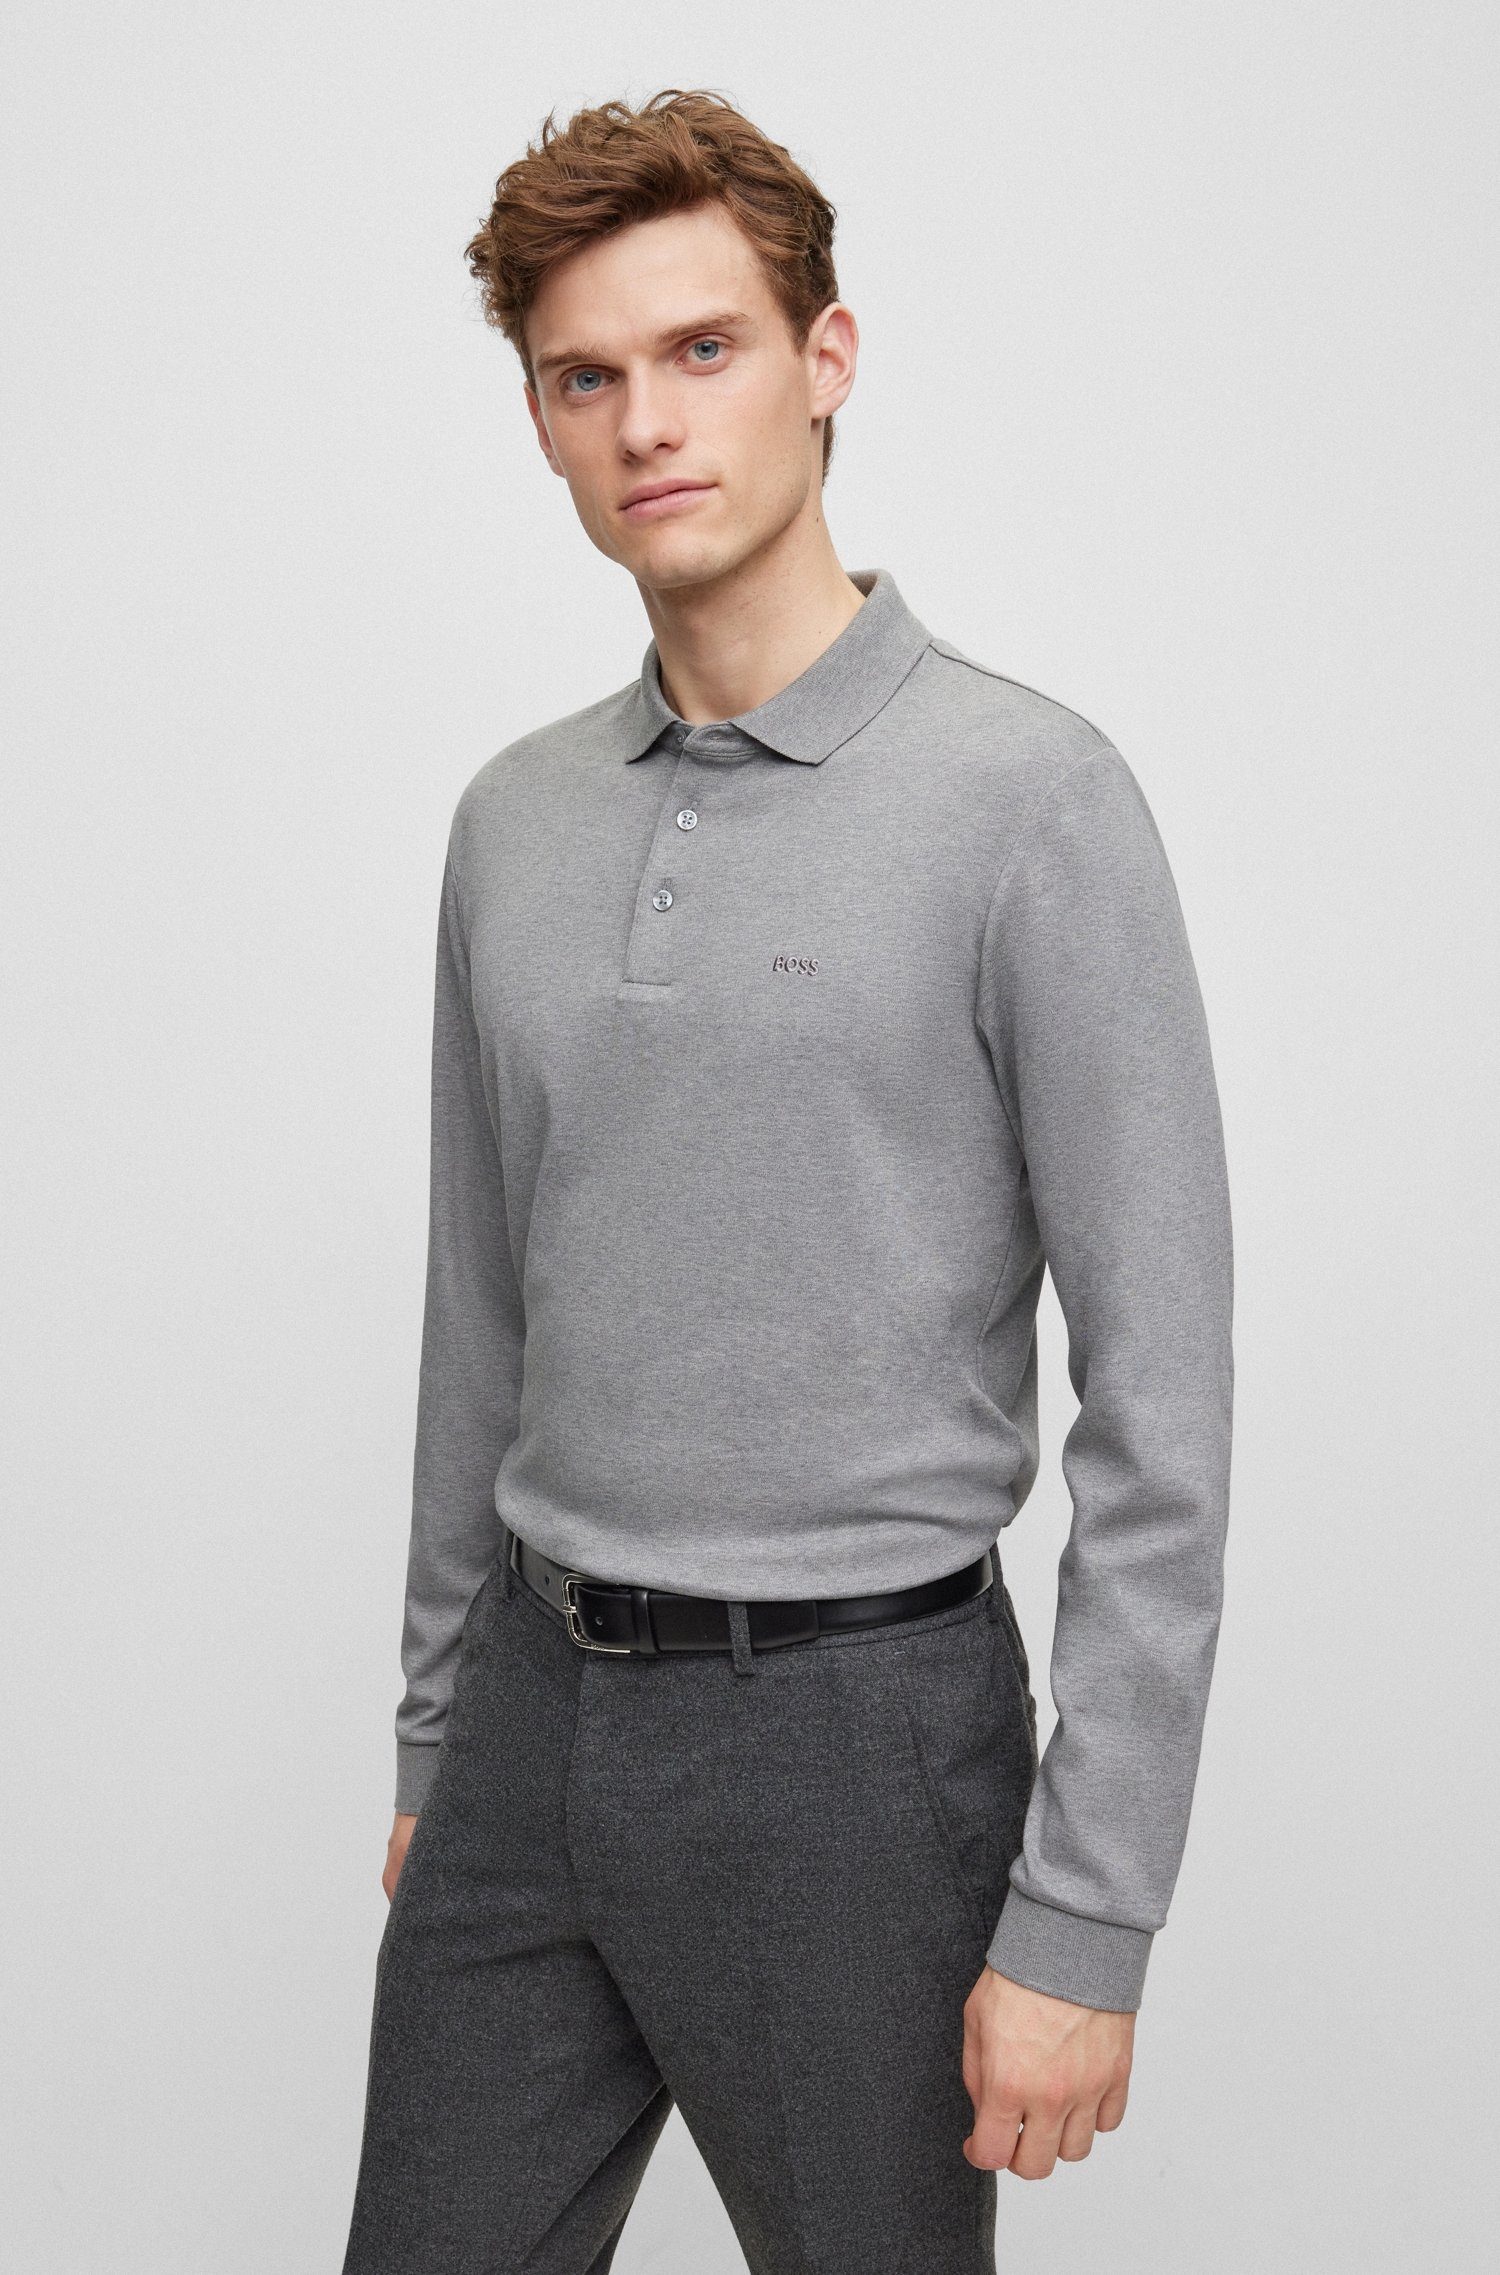 BOSS Sweatshirt Pado 30 Grey Medium 01 10241542